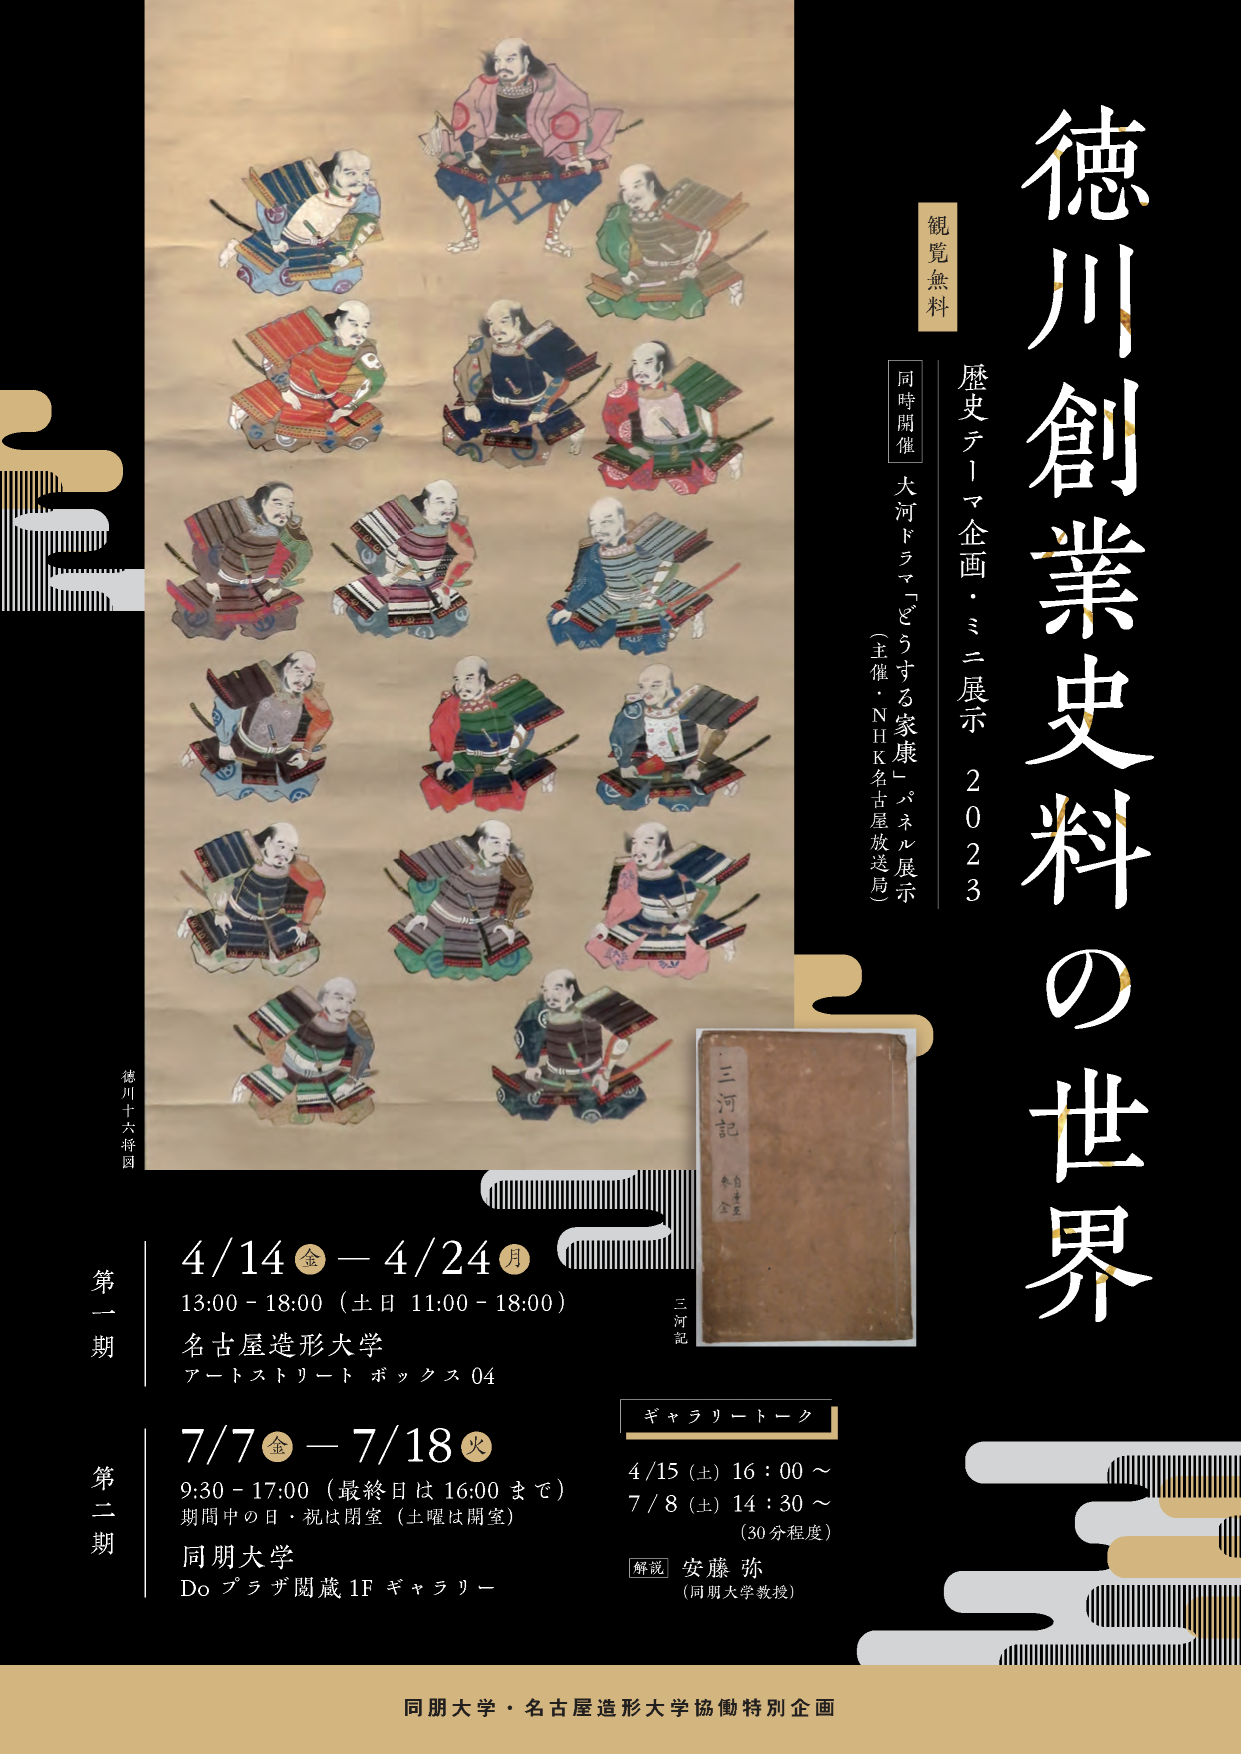 1徳川創業史料の世界 修正0620 compressed ページ 1